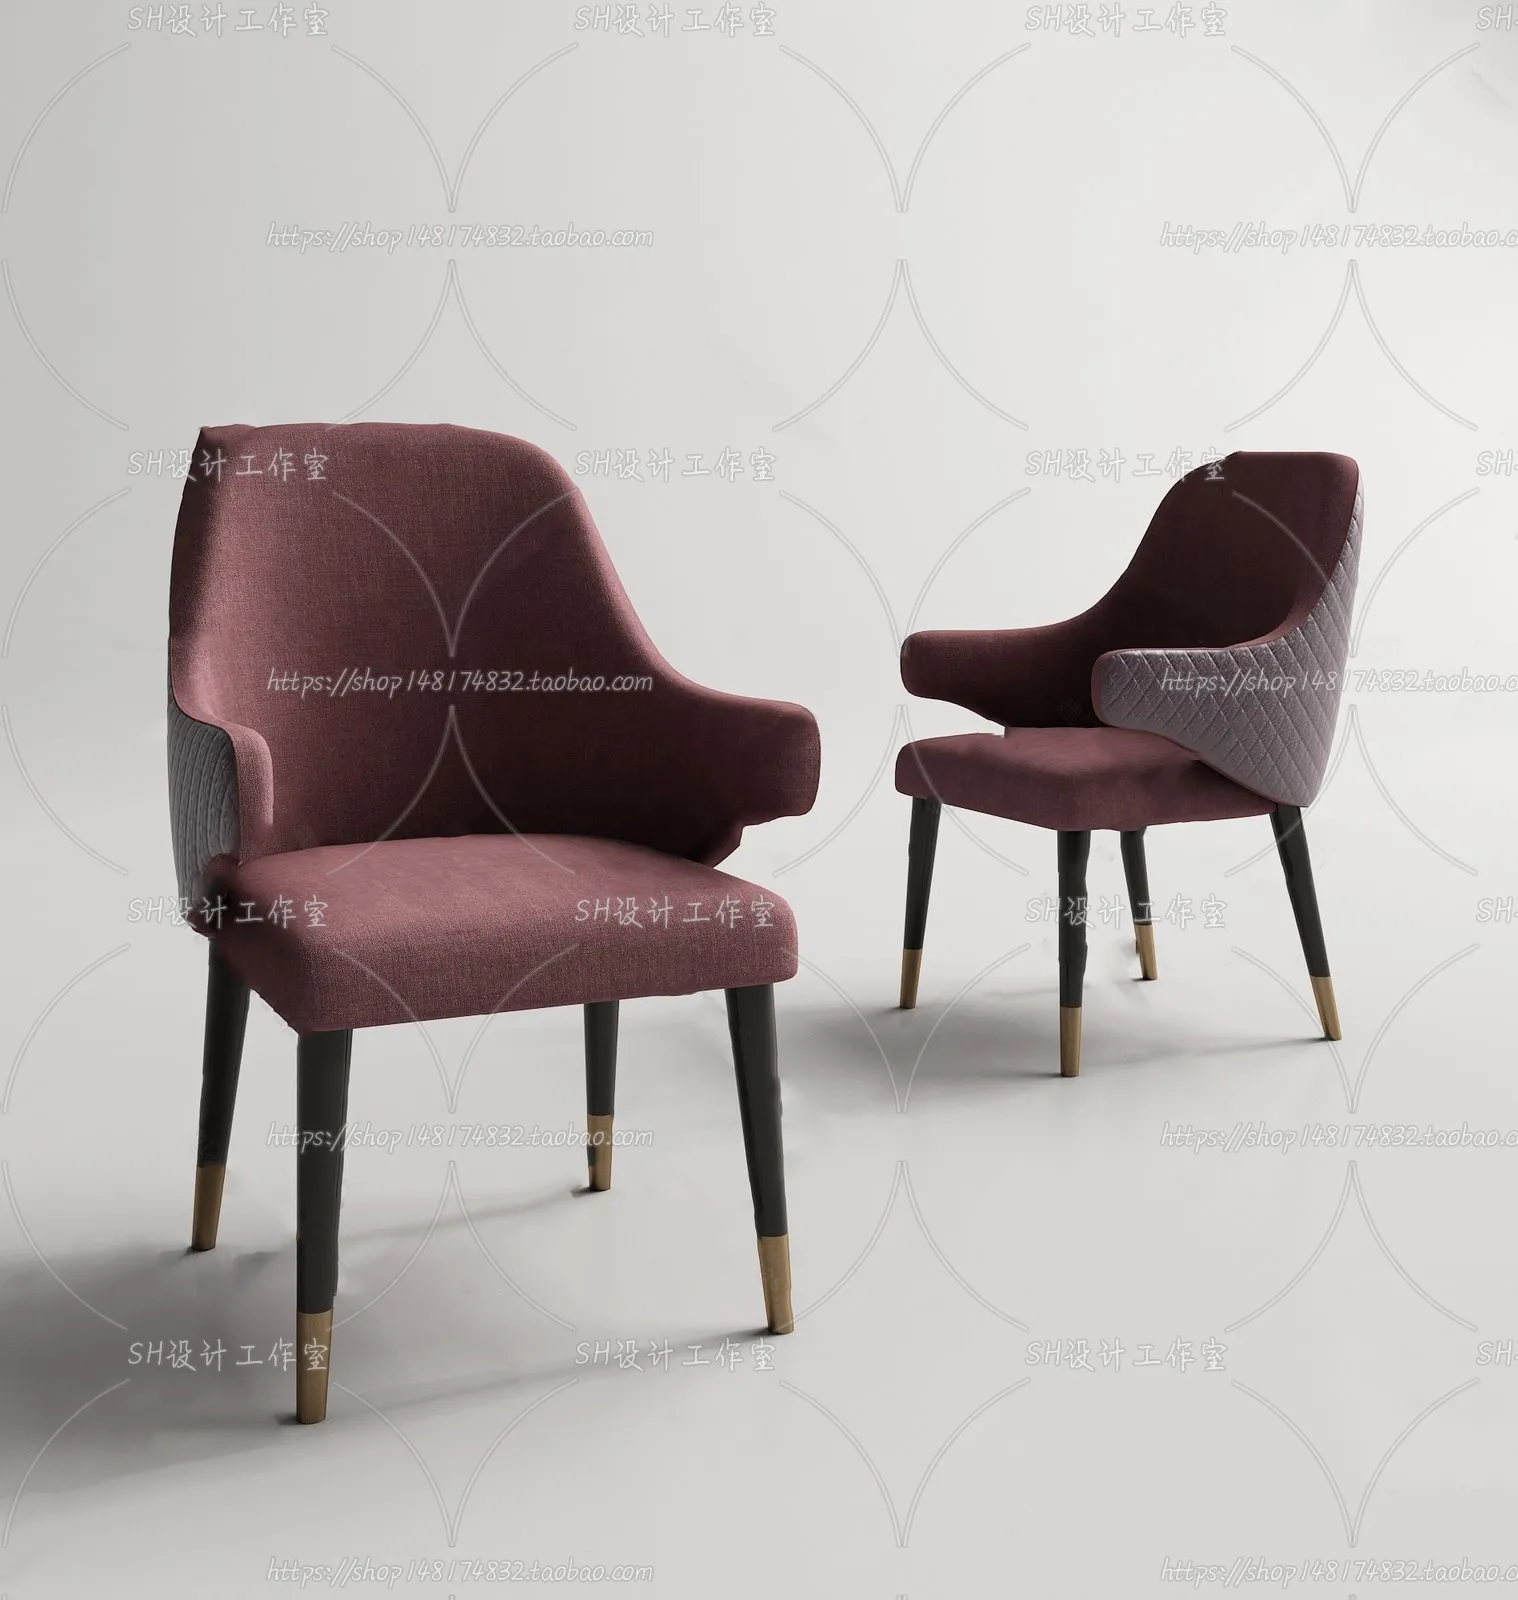 Chair – Single Chair 3D Models – 1967